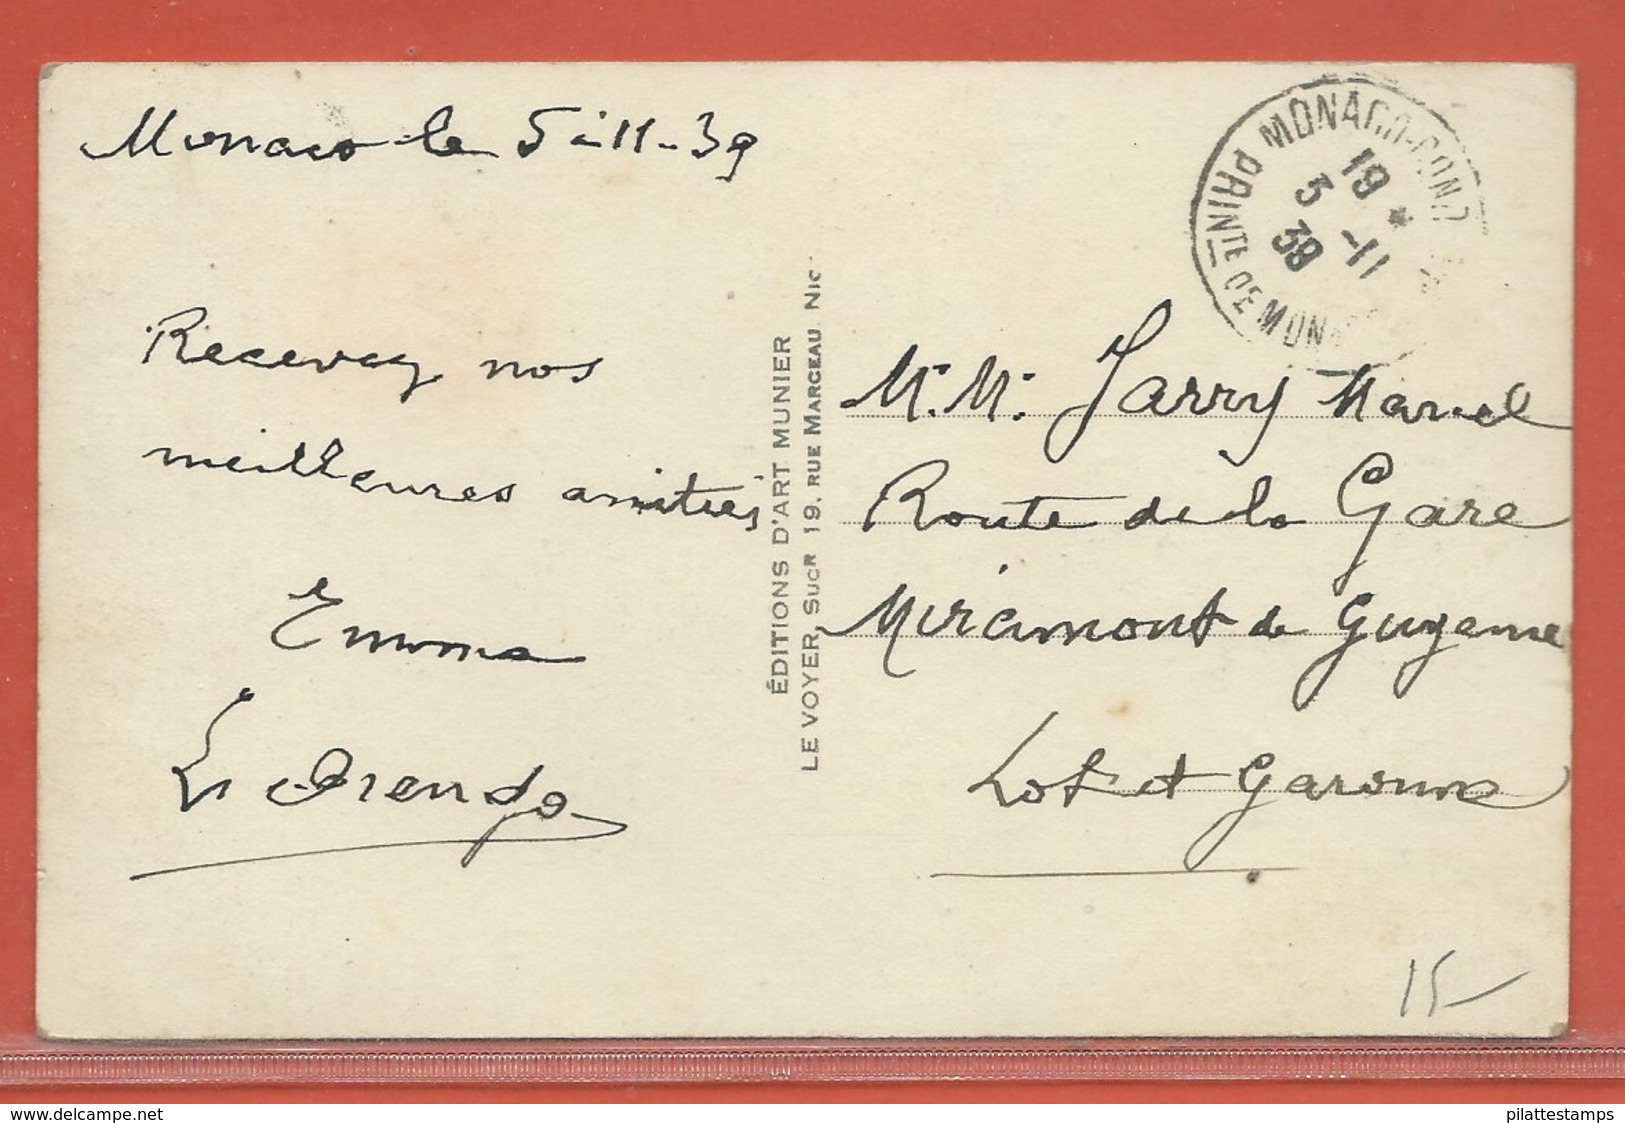 MONACO CARTE POSTALE AFFRANCHIE DE 1939 POUR MIRCIMONT FRANCE - Briefe U. Dokumente